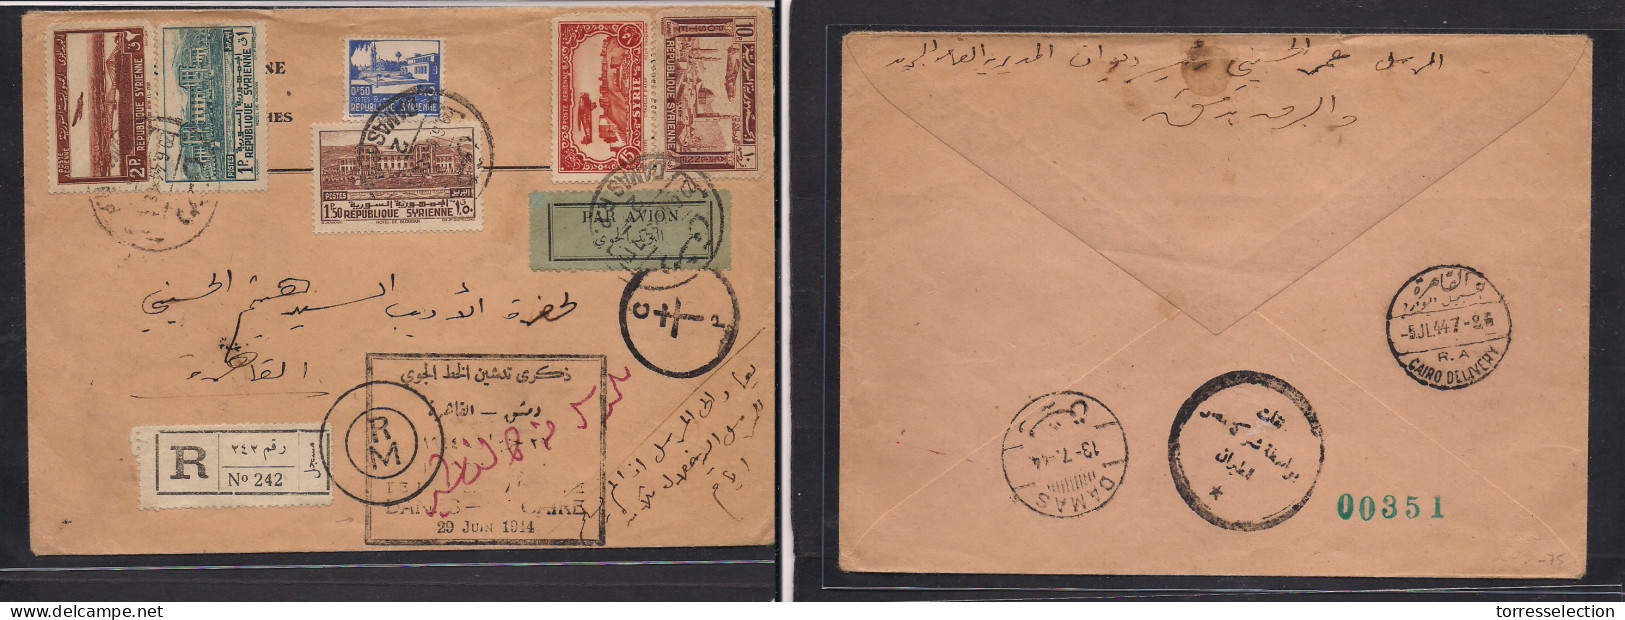 SYRIA. 1944 (29 June) Damas - Cairo (5 July) Registered Air Multifkd Special Flight Cachet Envelope + Censored. 2 Label  - Siria